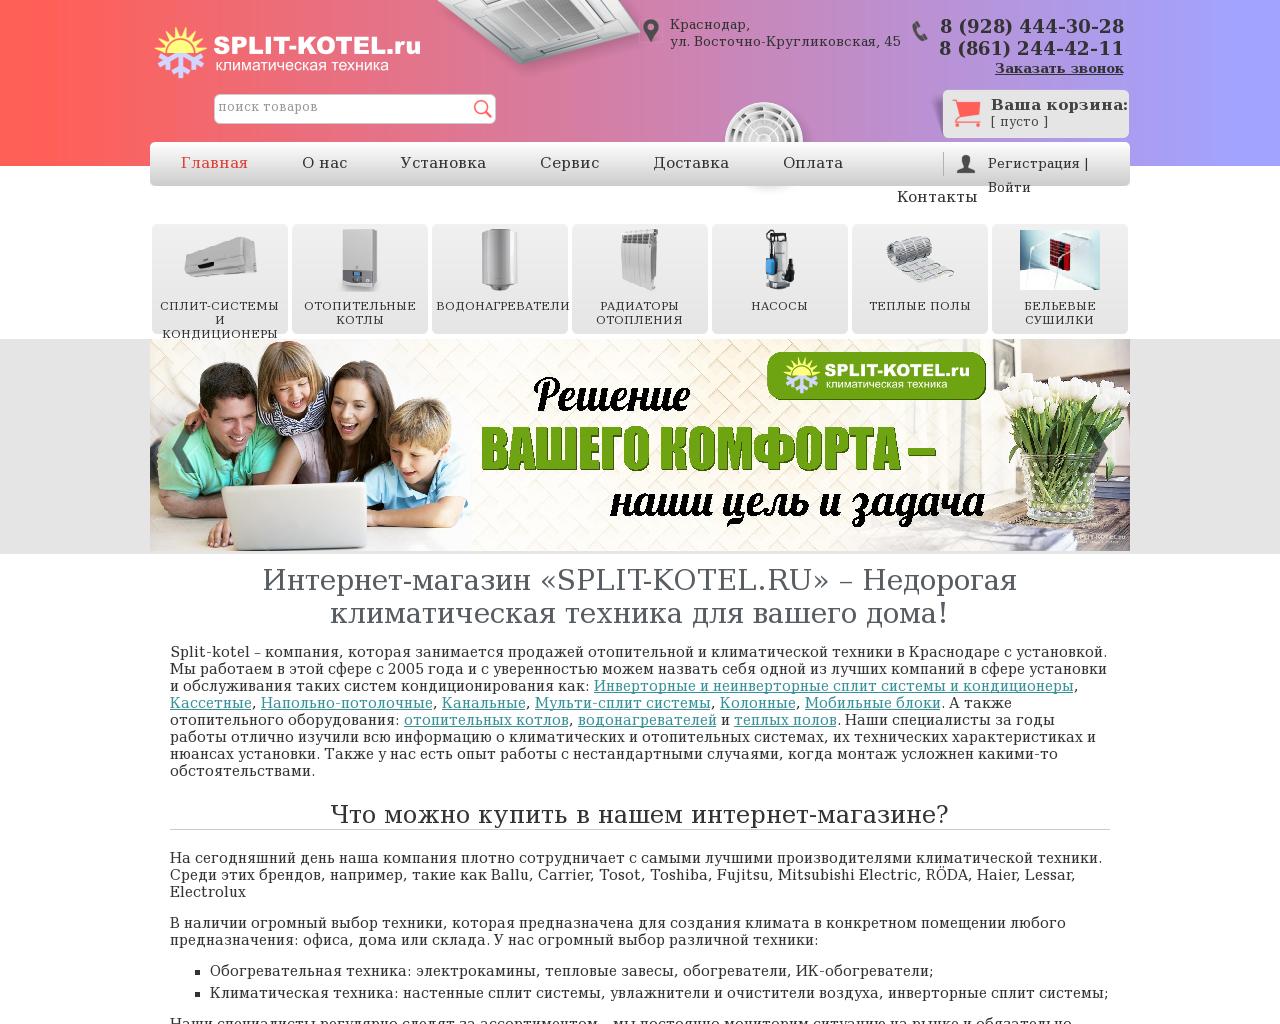 Изображение сайта split-kotel.ru в разрешении 1280x1024